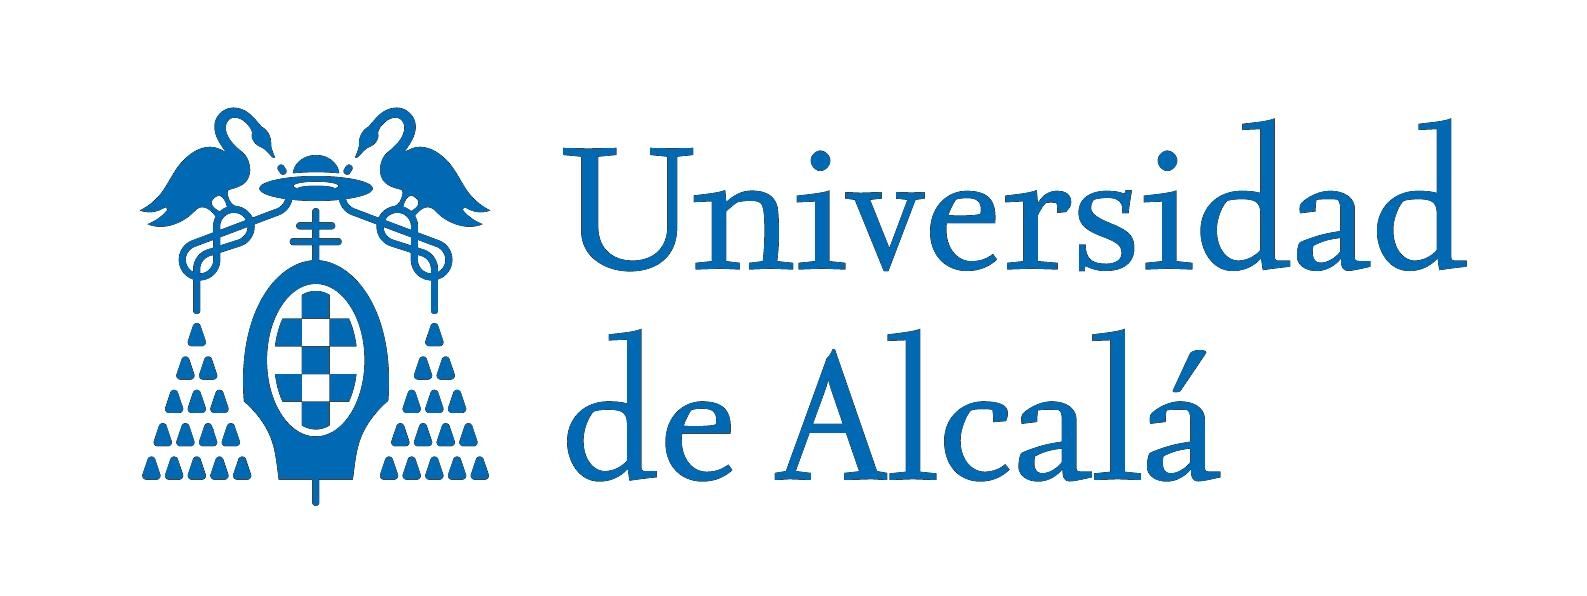 شعار Universidad de Alcala